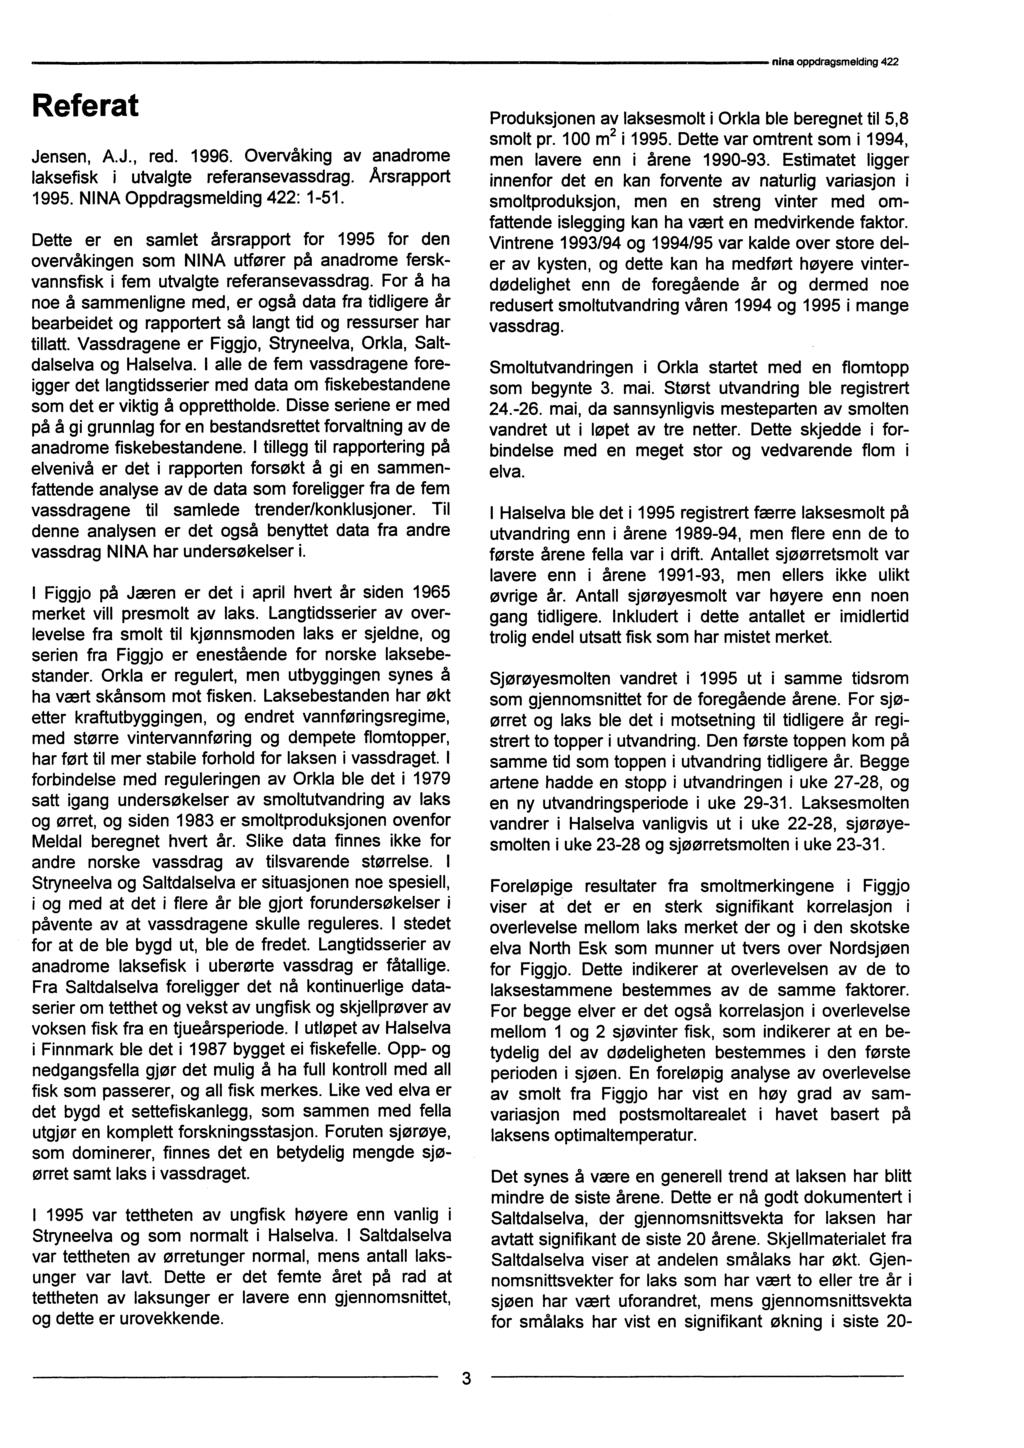 Referat Jensen, A.J., red. 1996. Overvåking av anadrome laksefisk i utvalgte referansevassdrag. Årsrapport 1995. NINA Oppdragsmelding 422: 1-51.